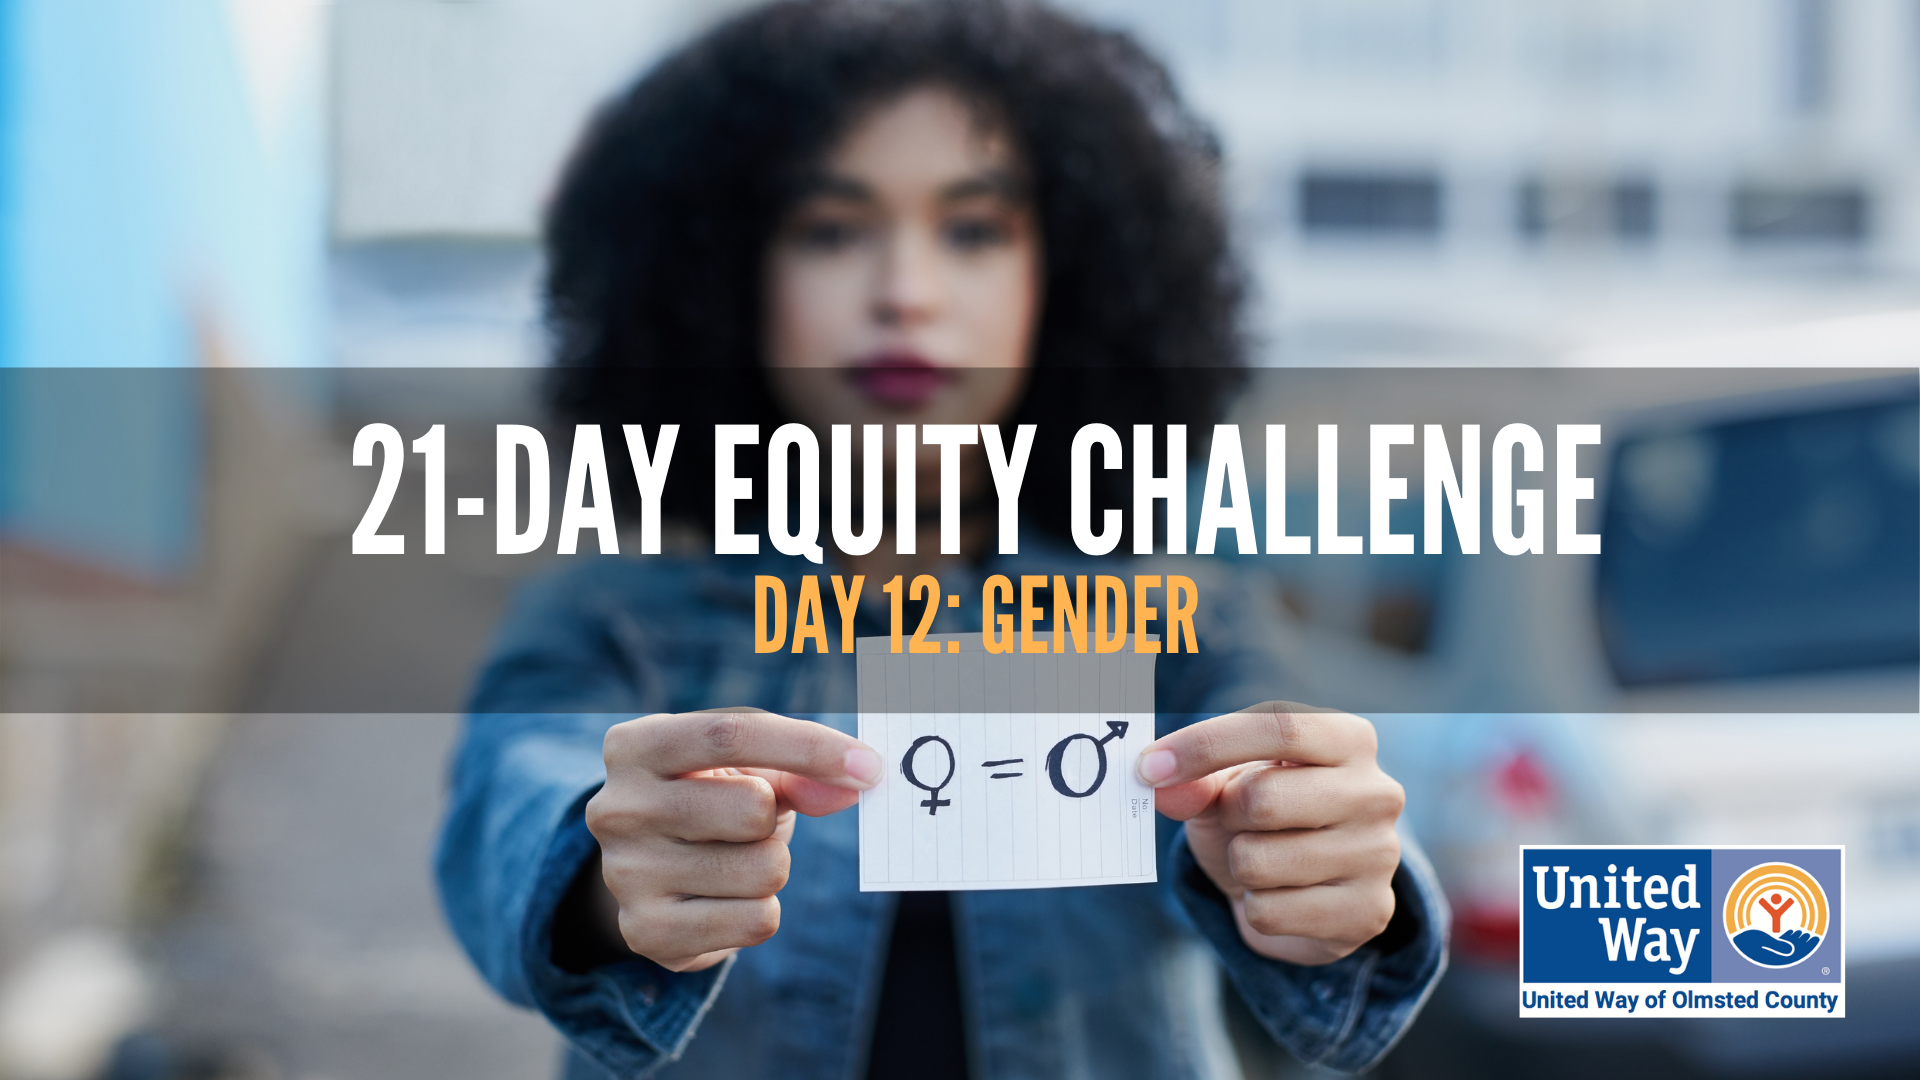 Day 12: Gender